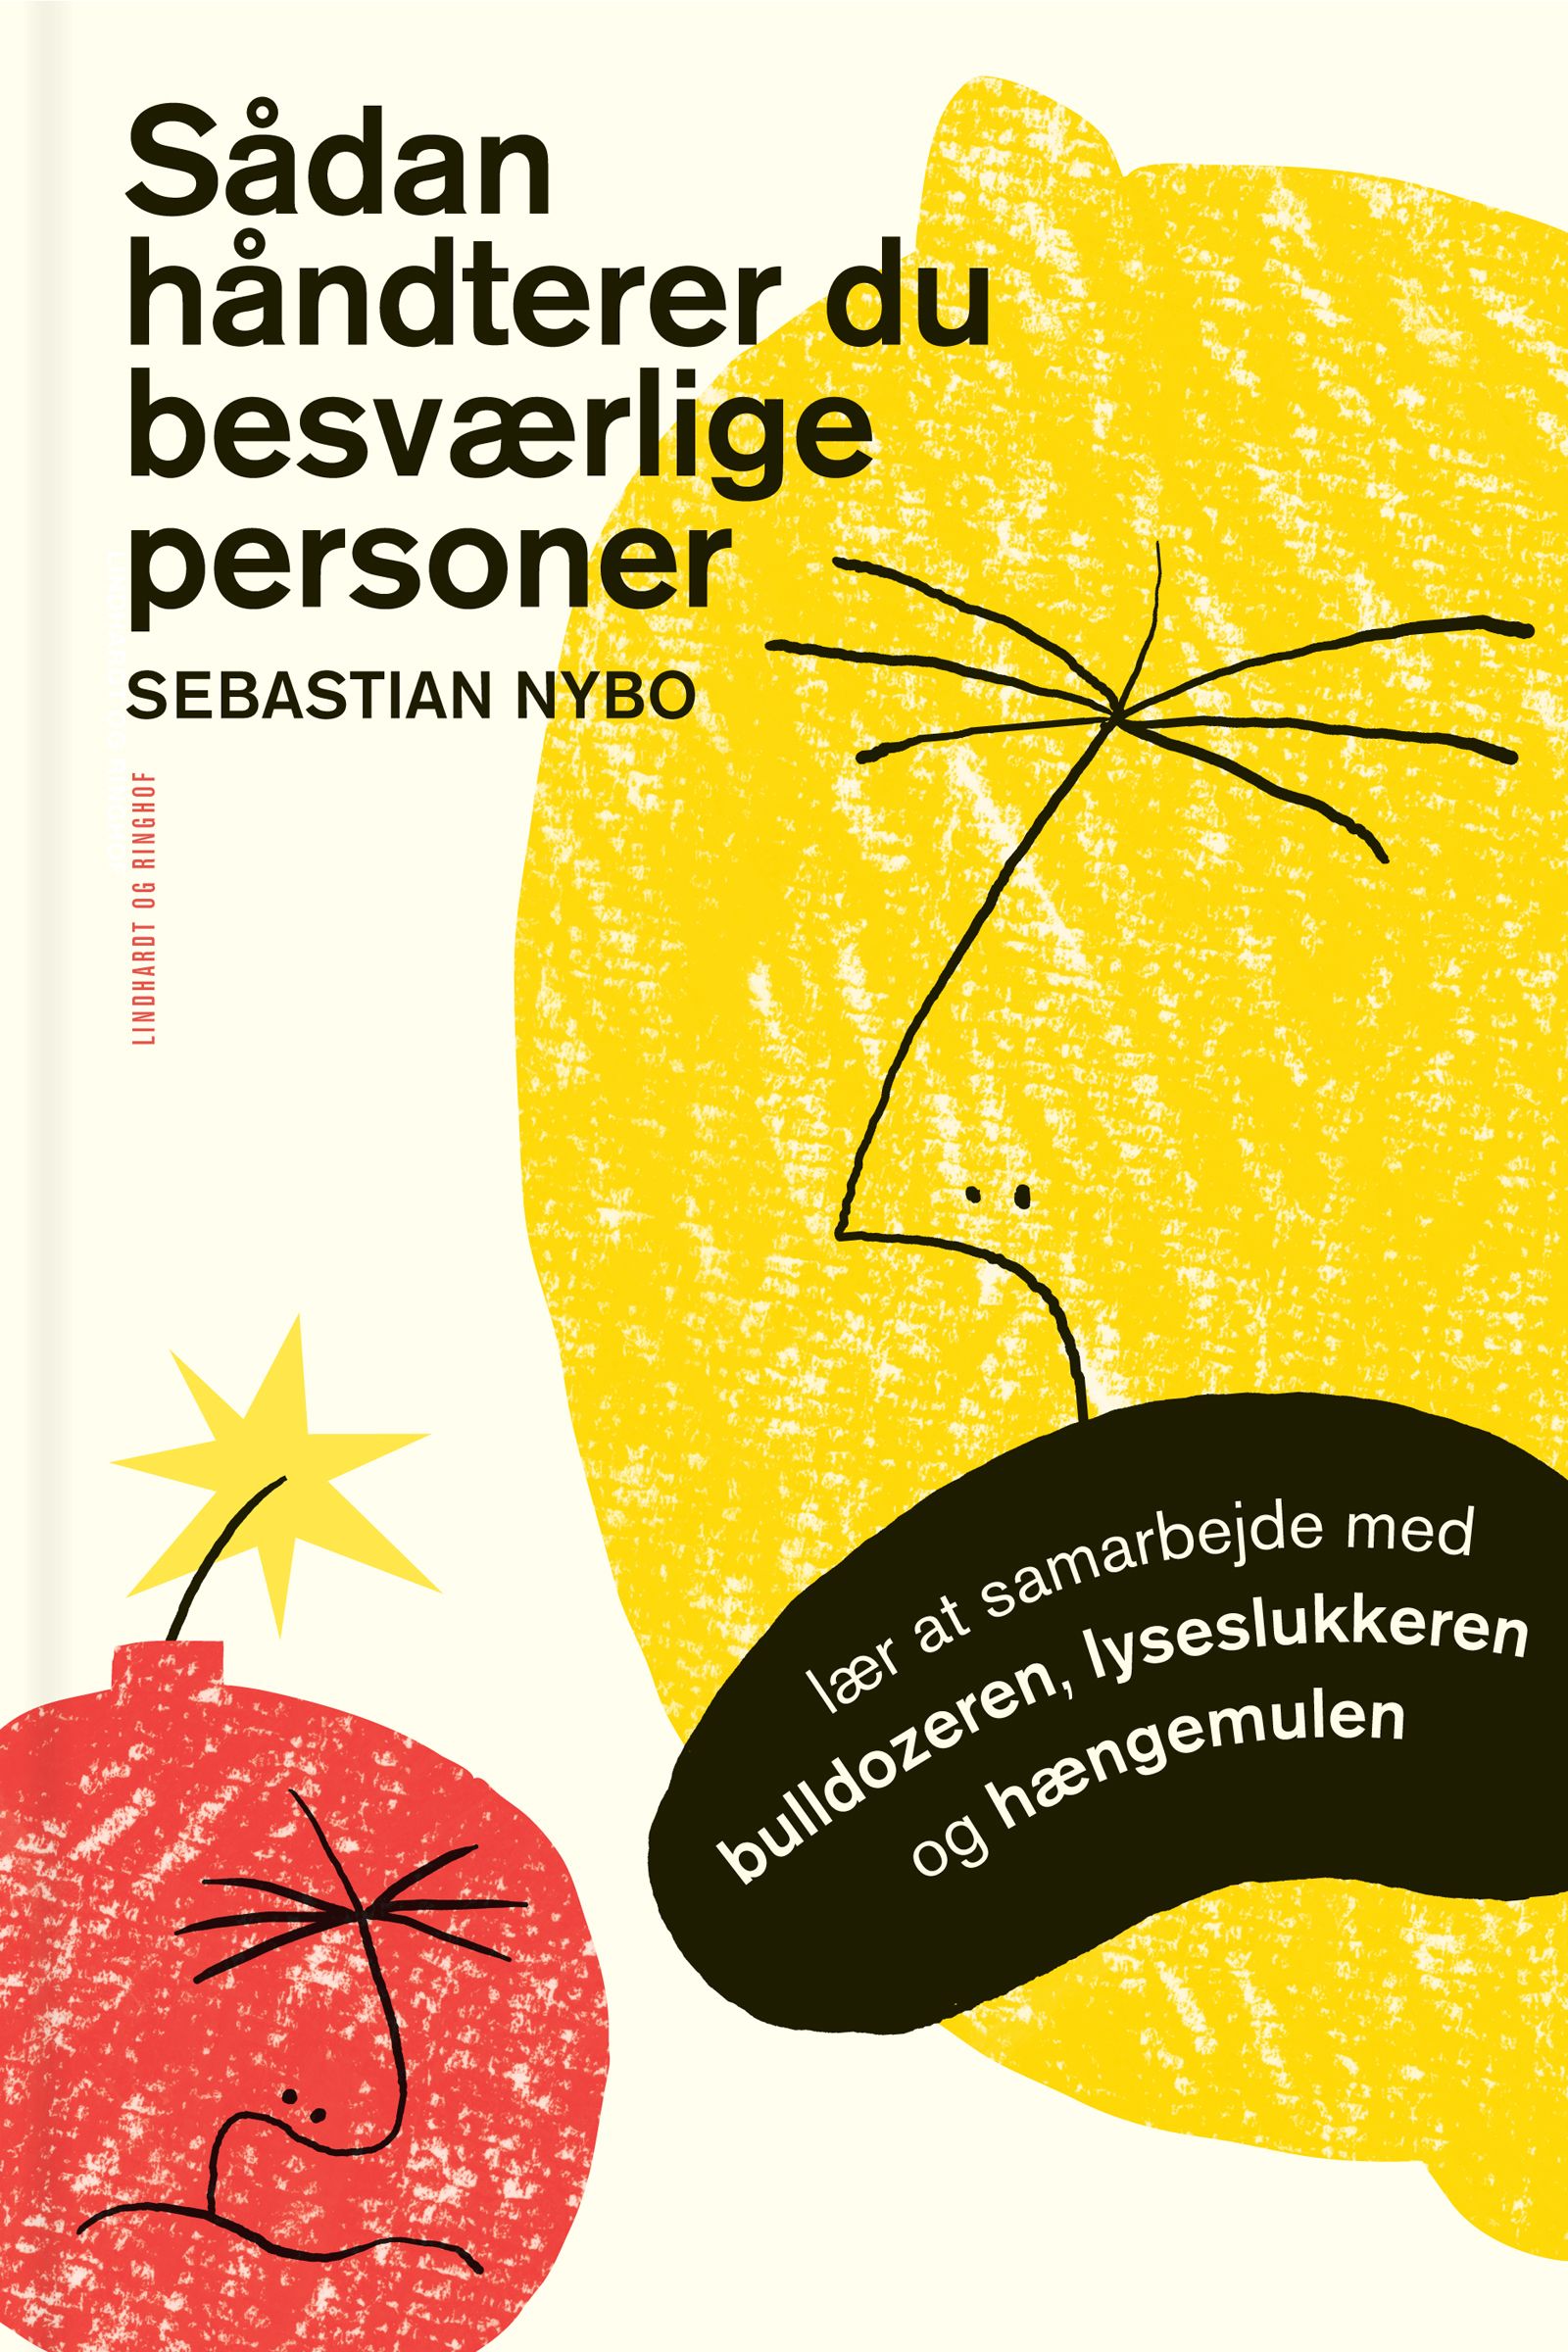 Sådan håndterer du besværlige personer, eBook by Sebastian Nybo